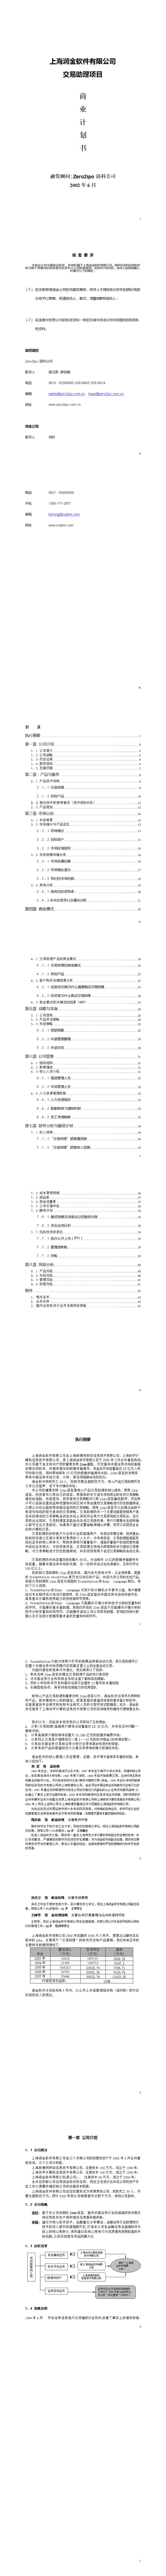 上海润金软件有限公司交易助理项目商业计划书